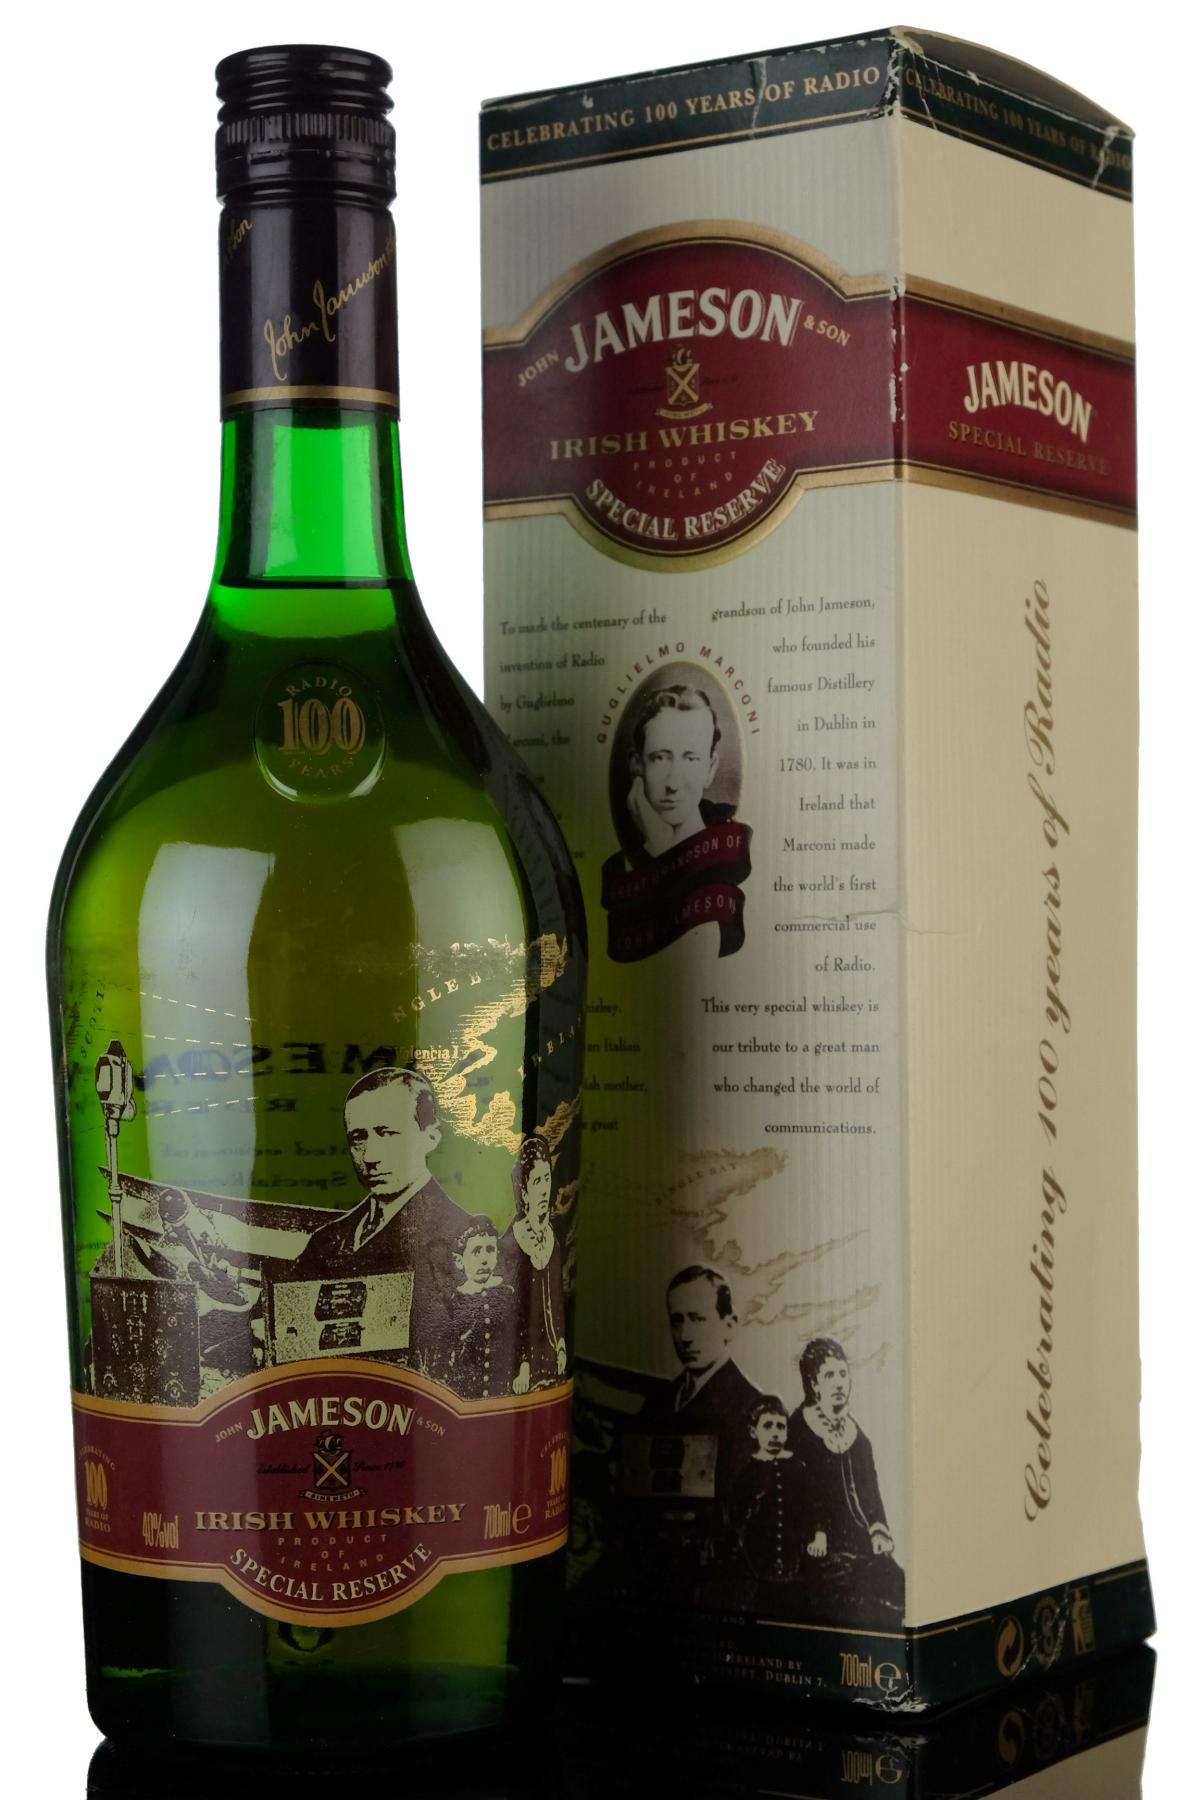 Jameson Irish Whiskey